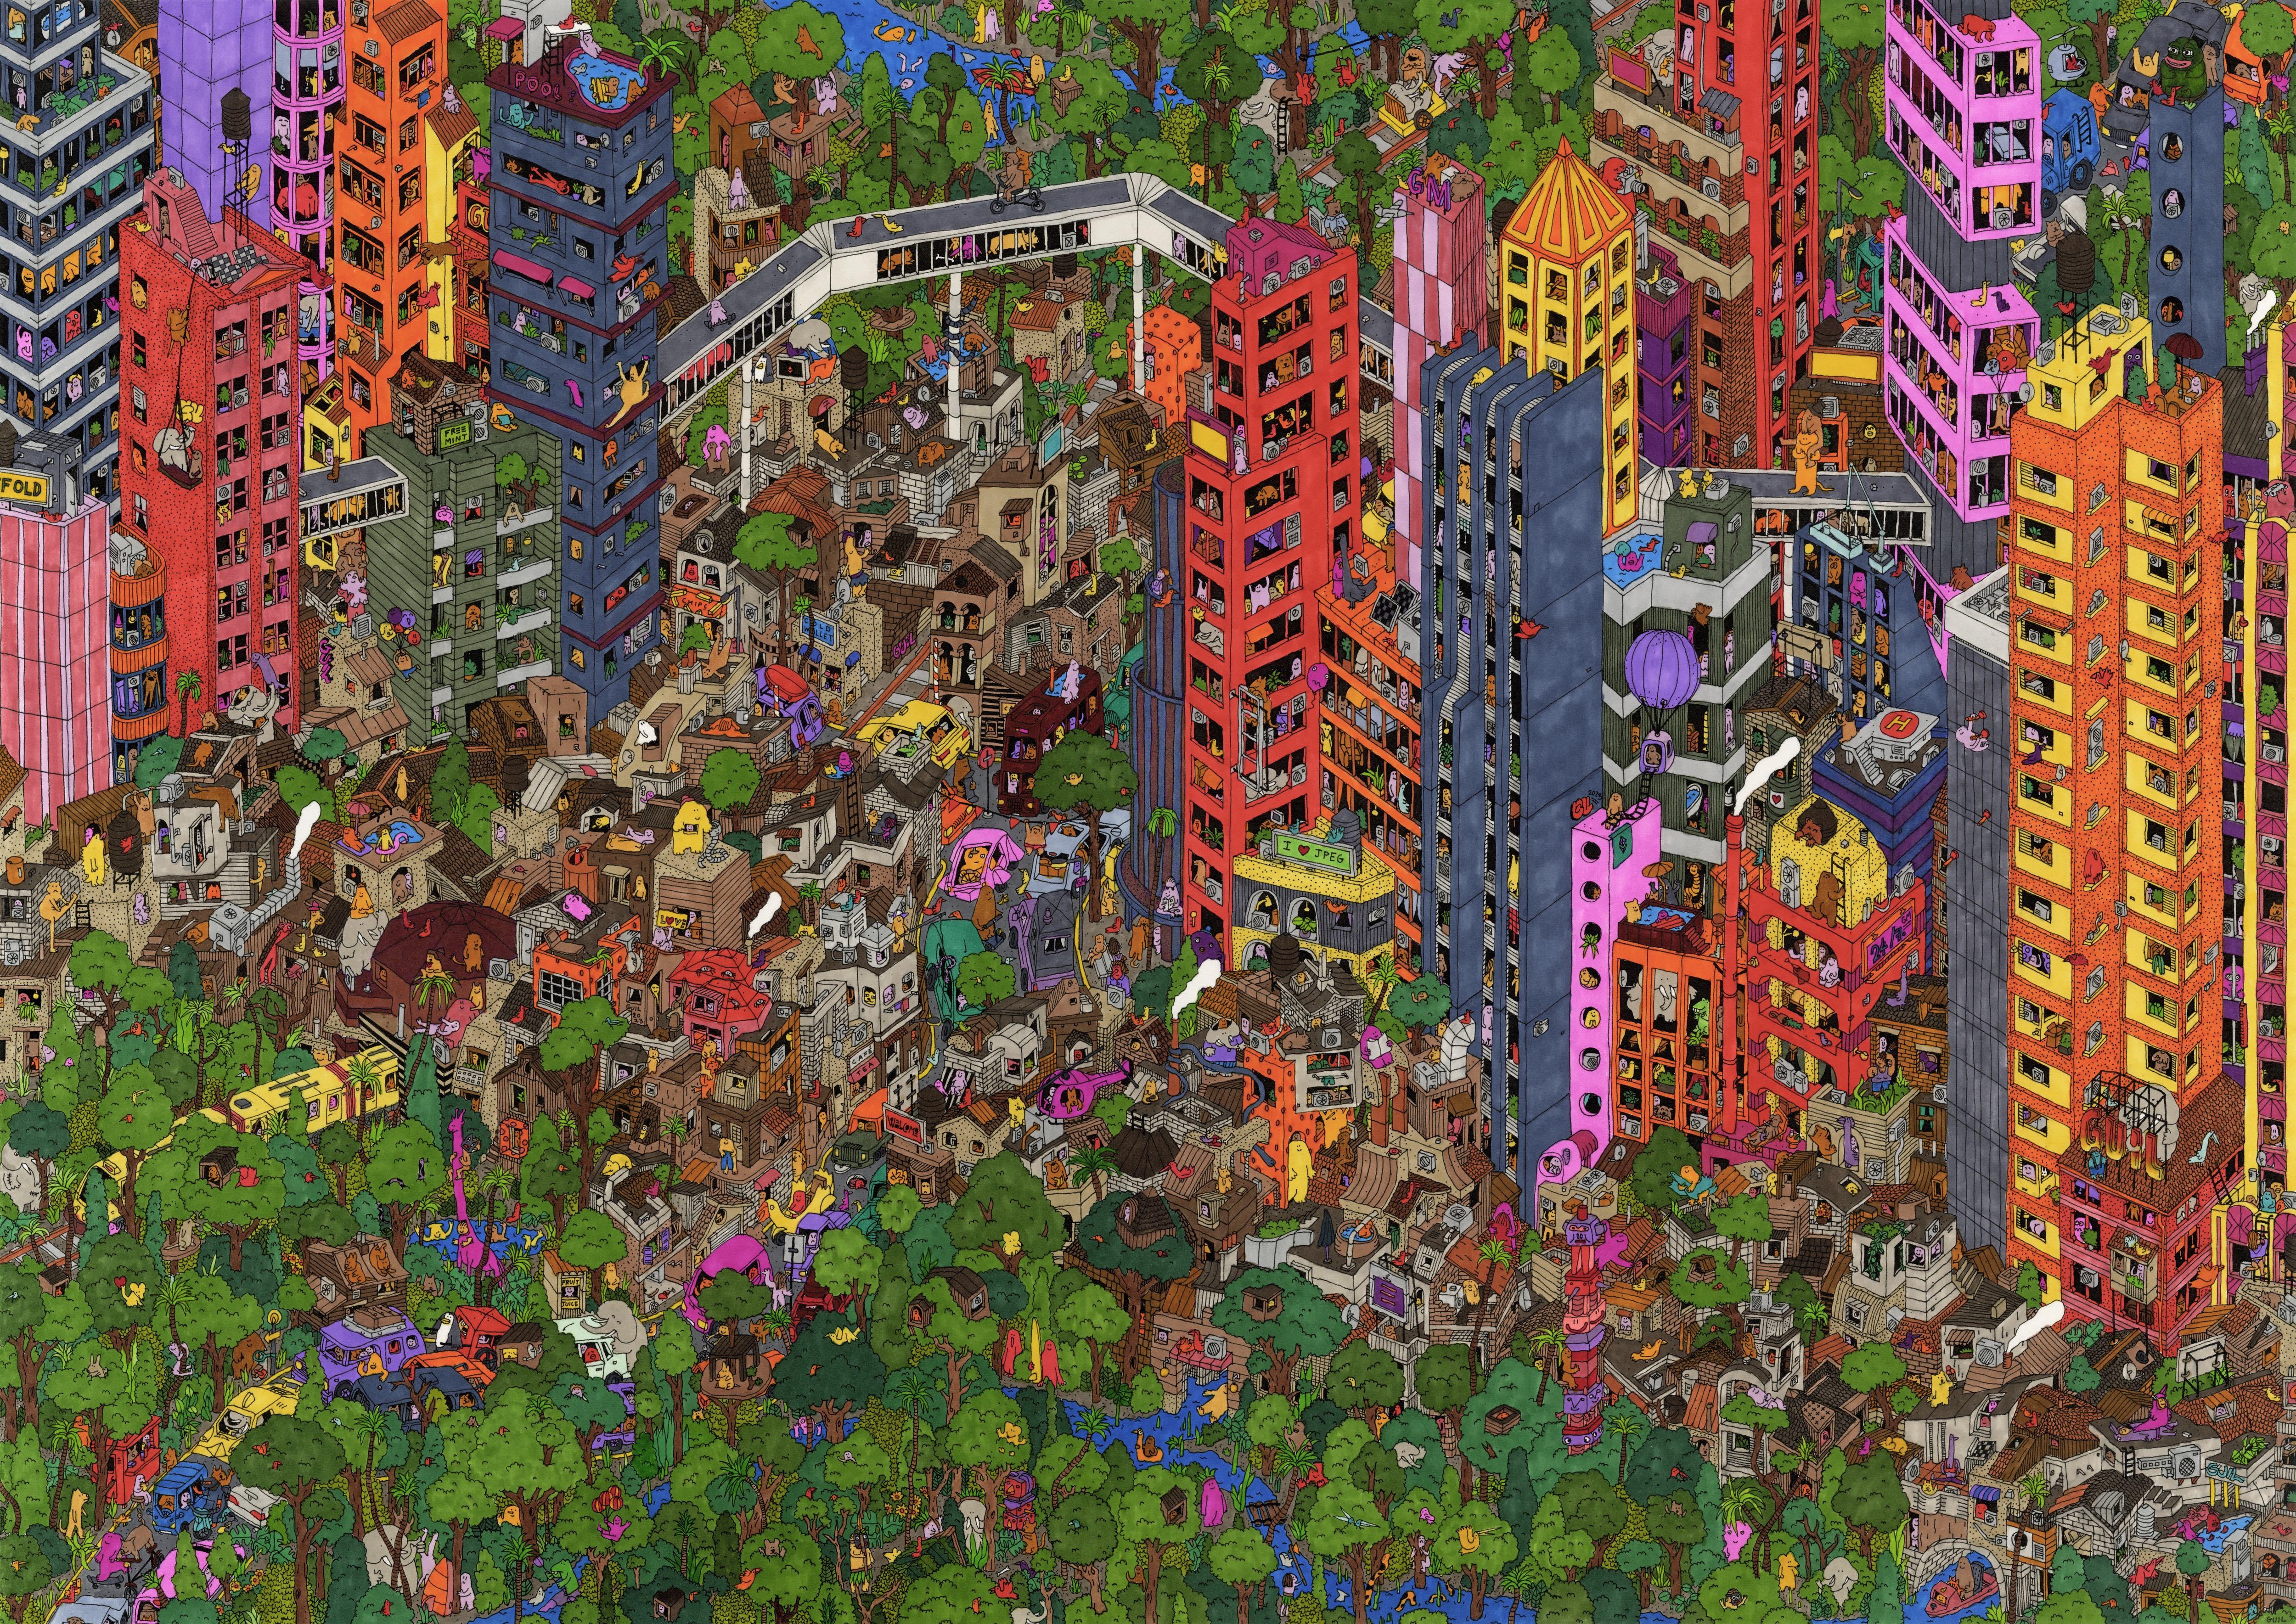 Dschungel Metropolis, eine Illustration von Guillaume Cornet, weiß gerahmt